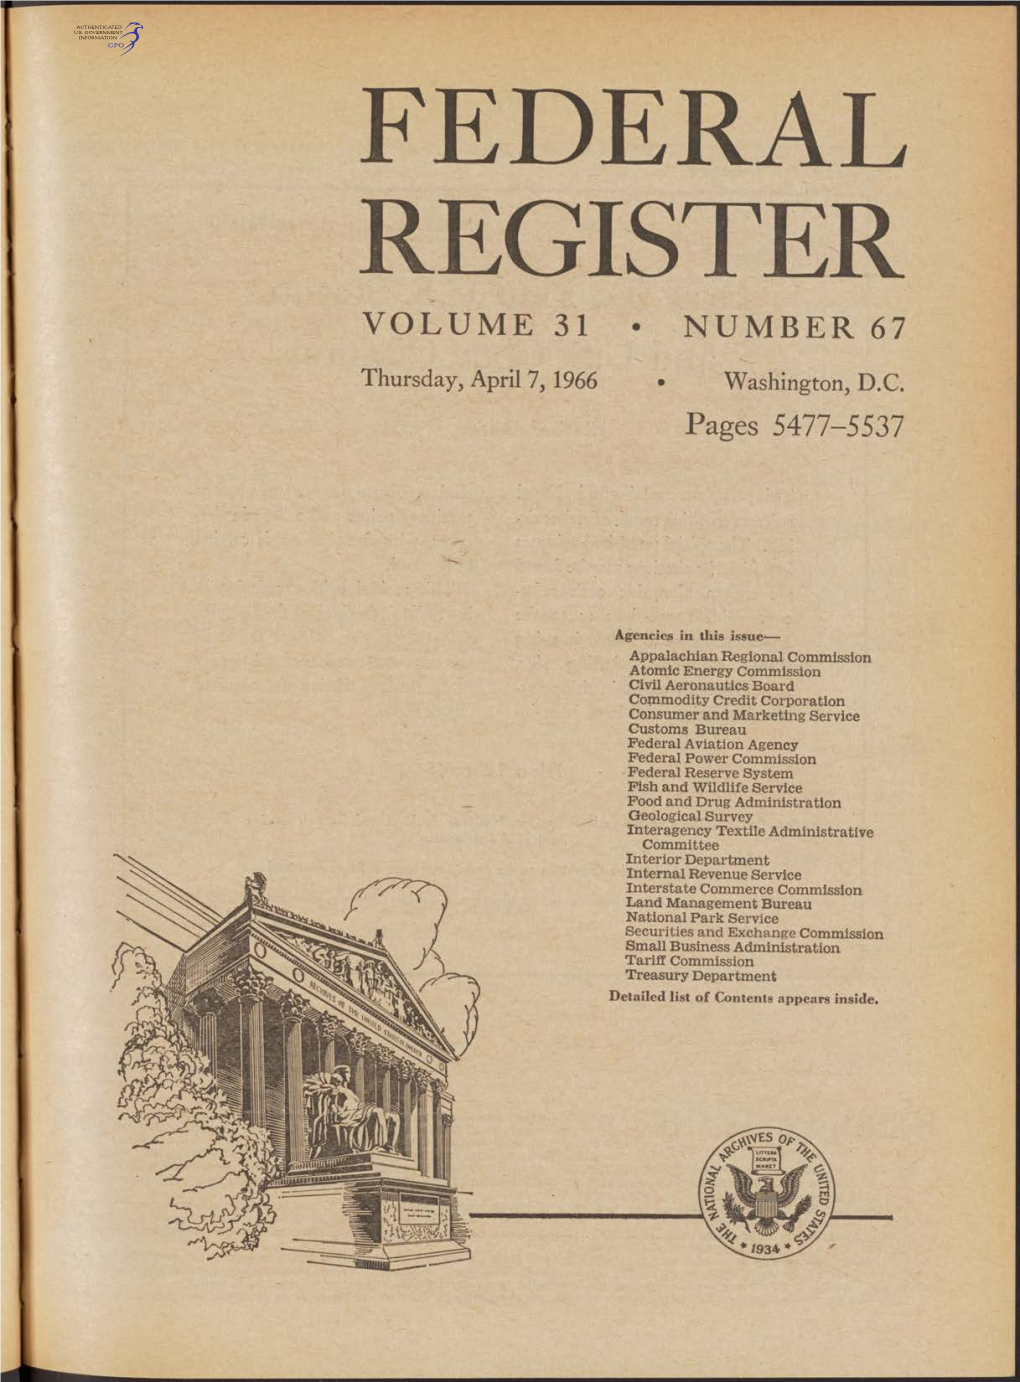 Federal Register Volume 31 • Number 67